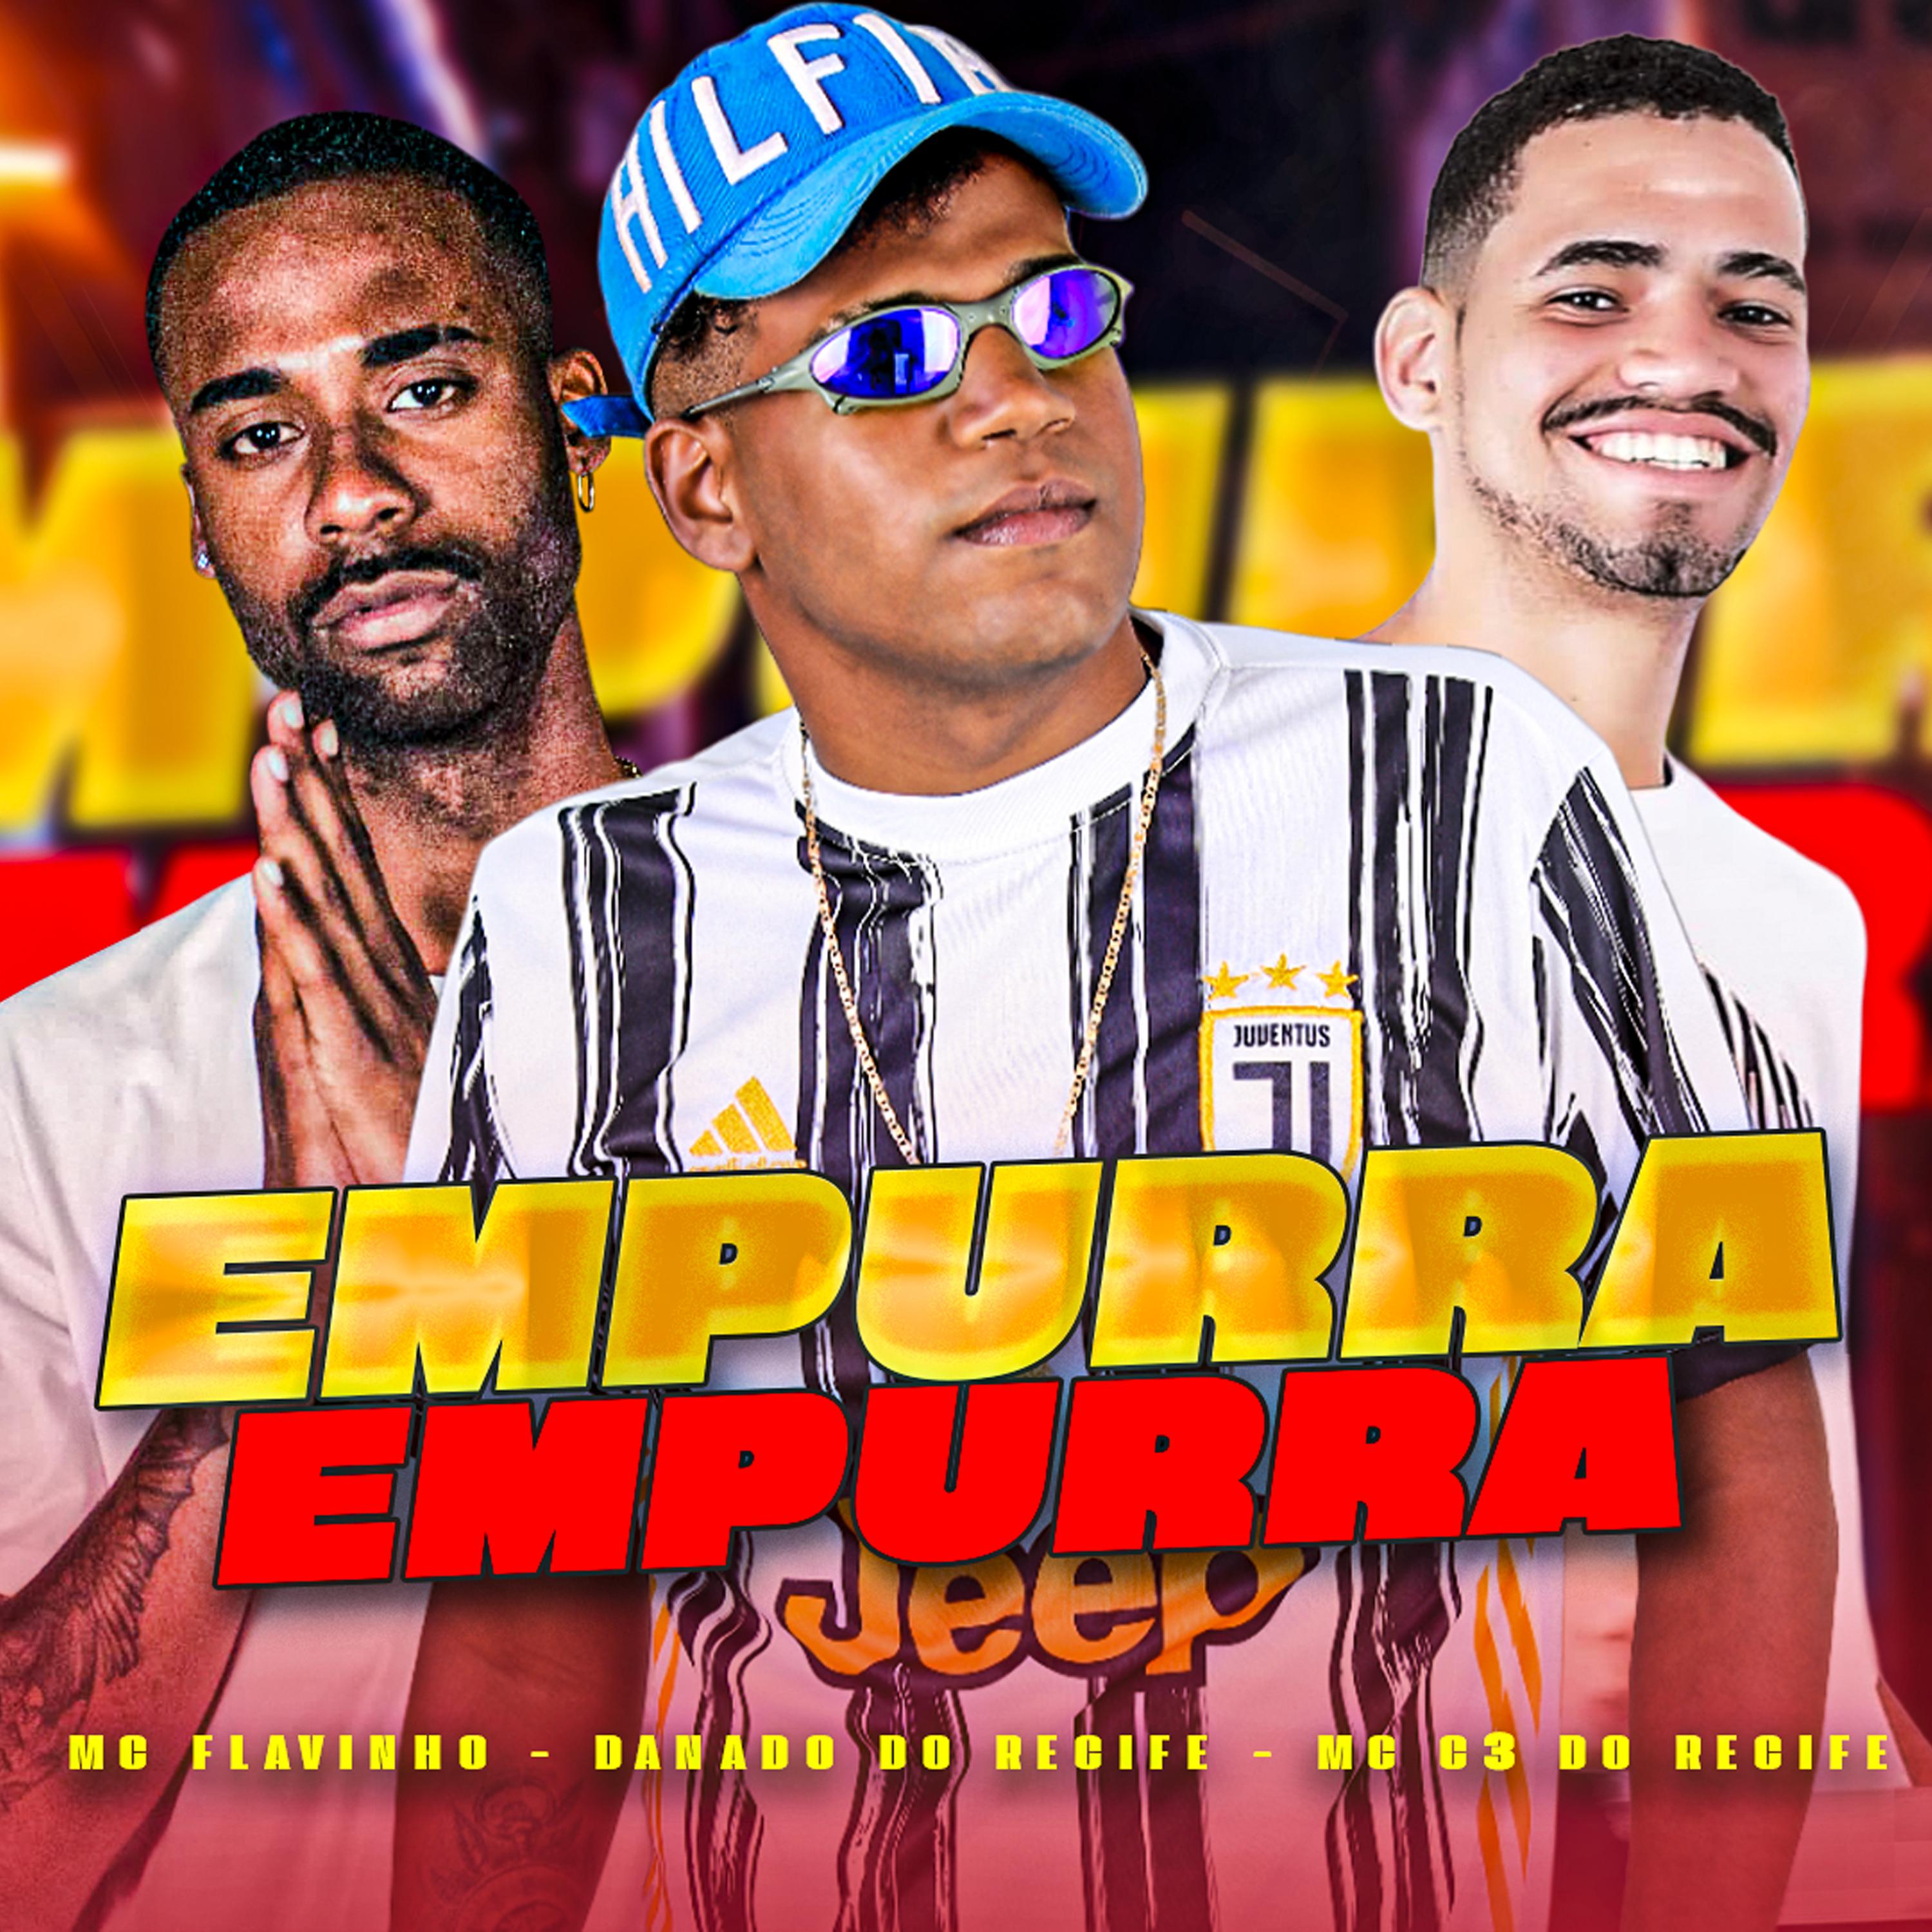 Постер альбома Empurra Empurra